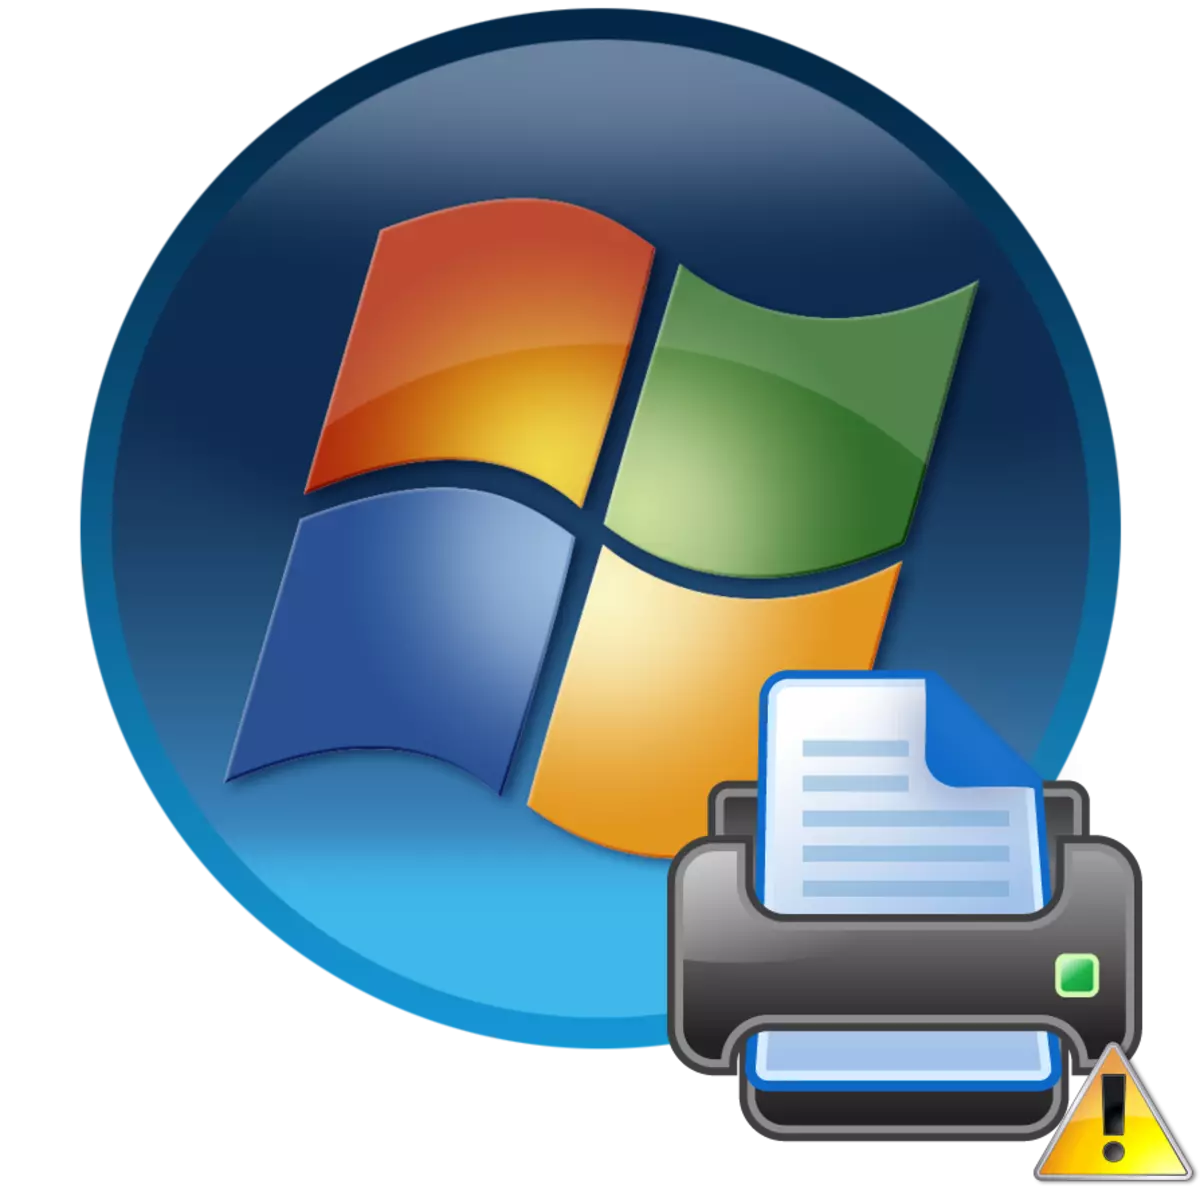 在Windows 7中打印机不可见